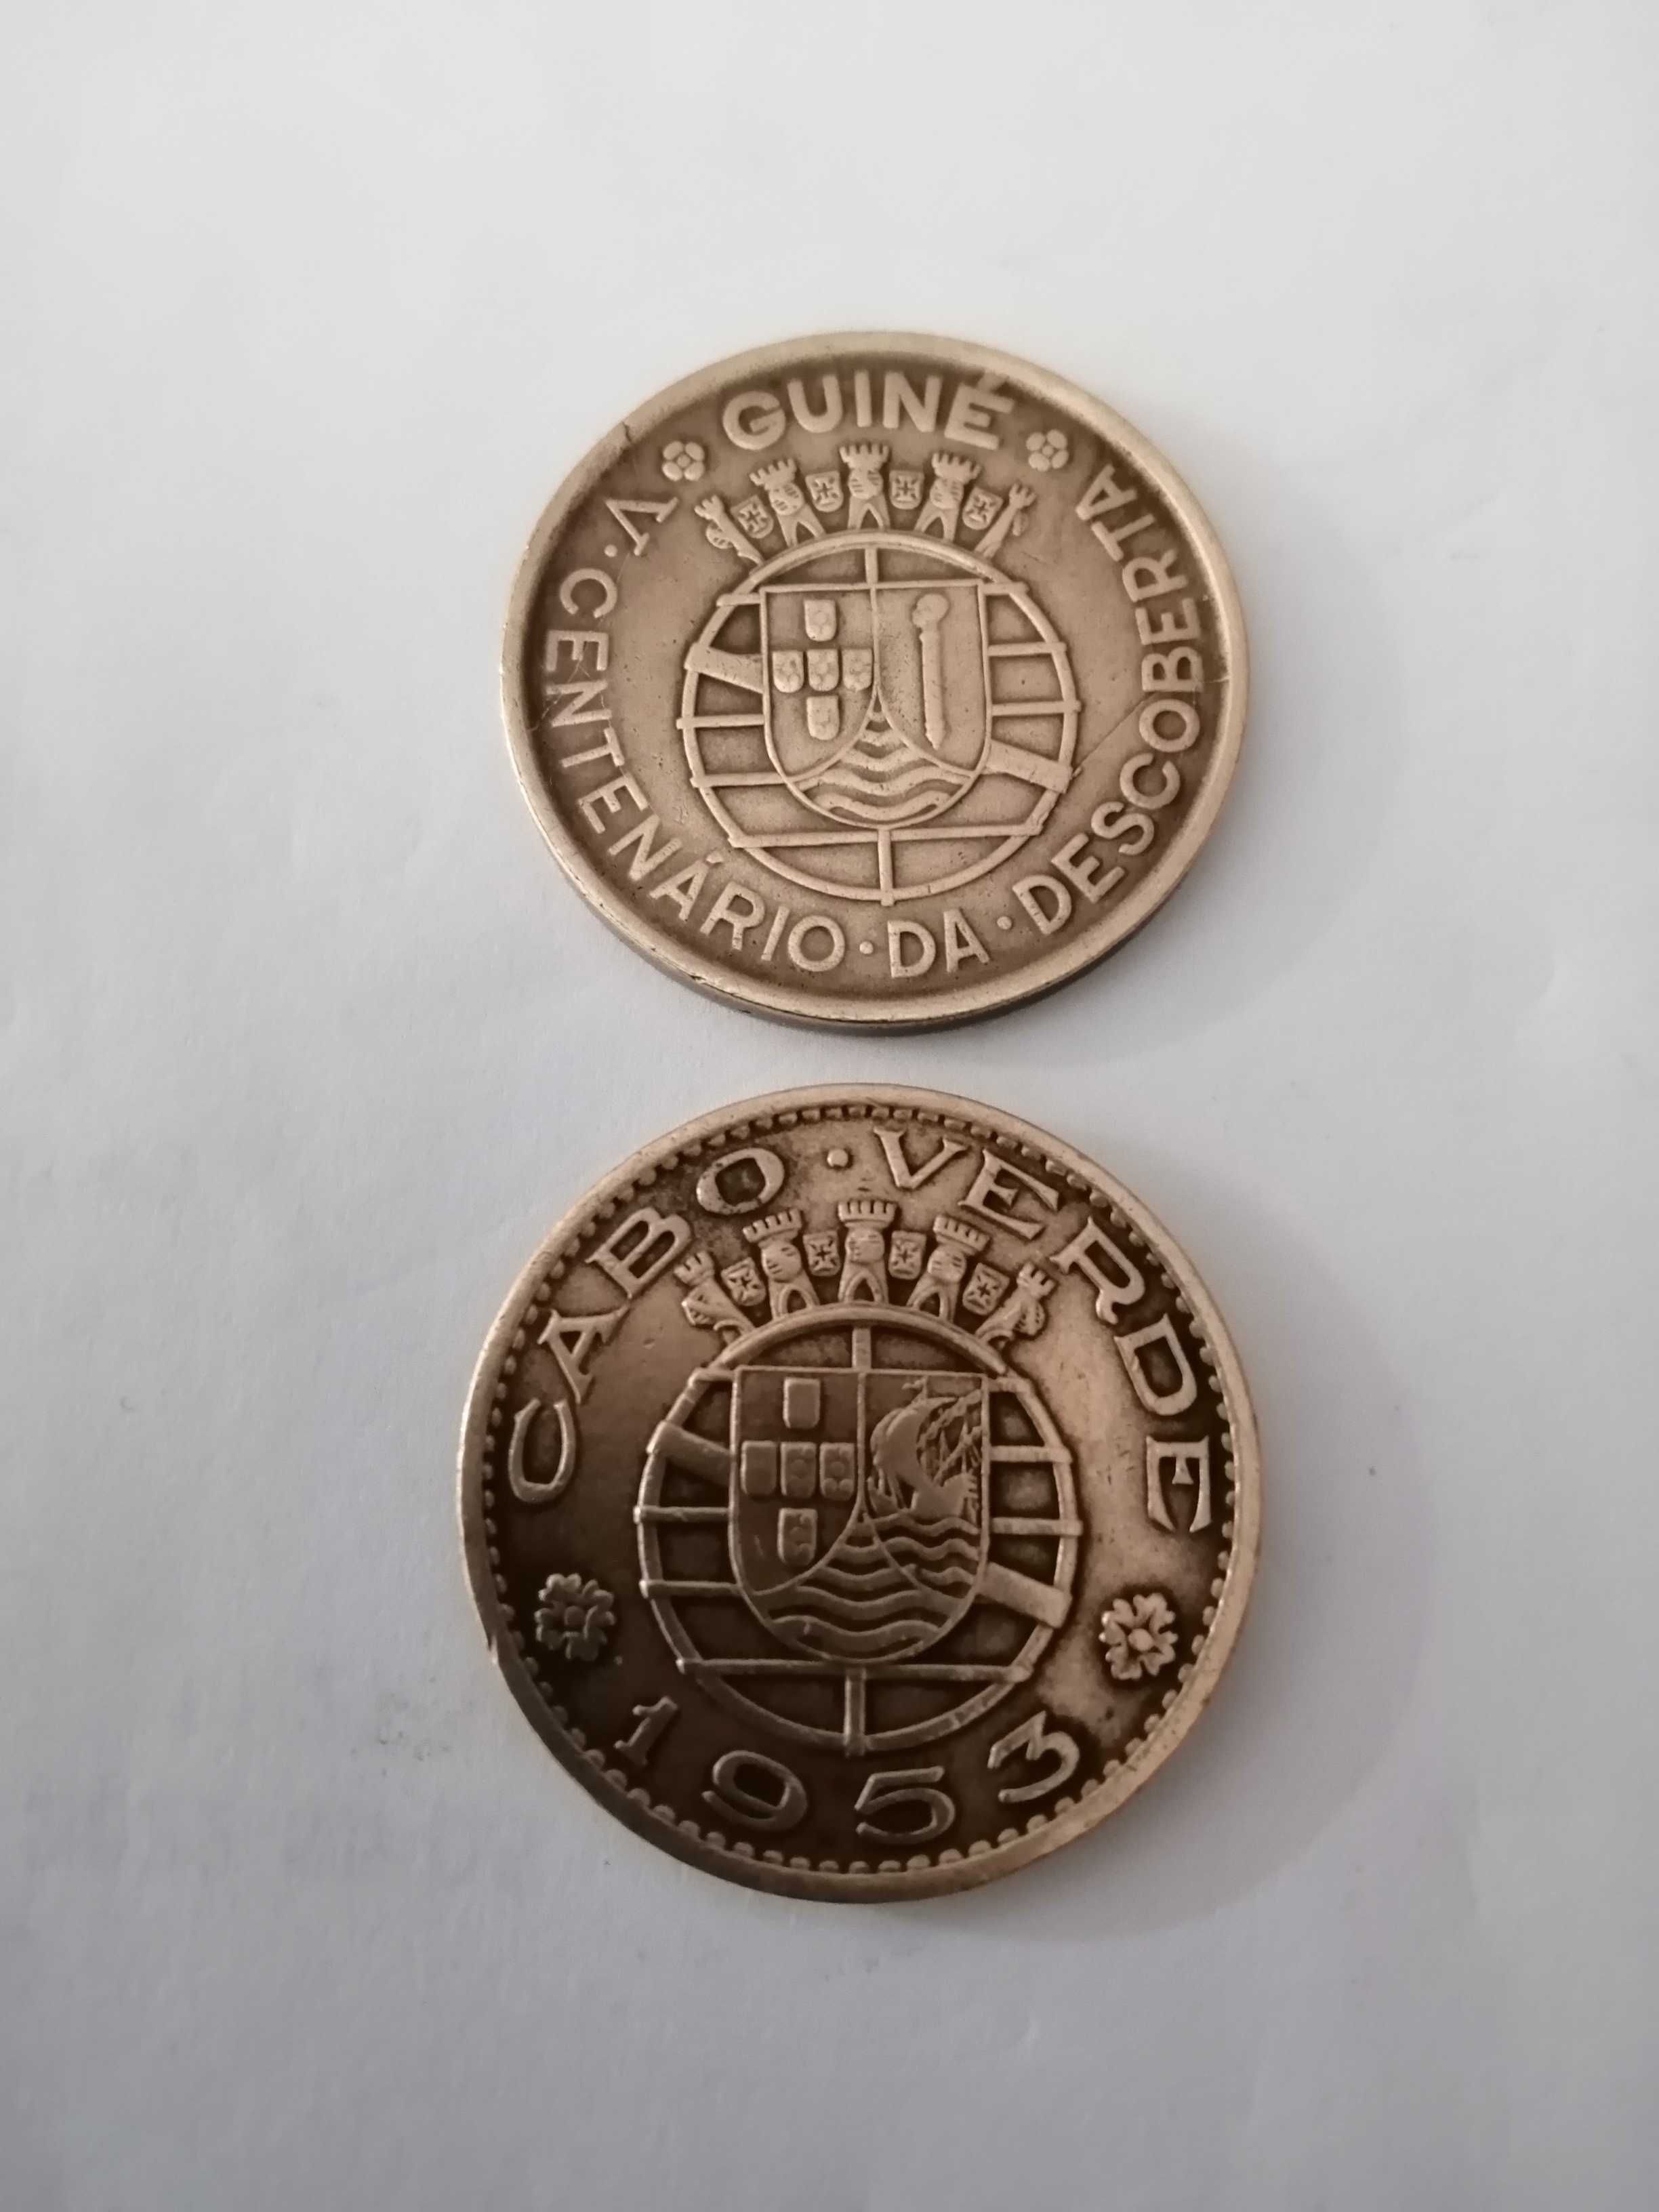 Moedas de 1 escudo de Cabo Verde, 1953, e Guiné 1946, em bronze